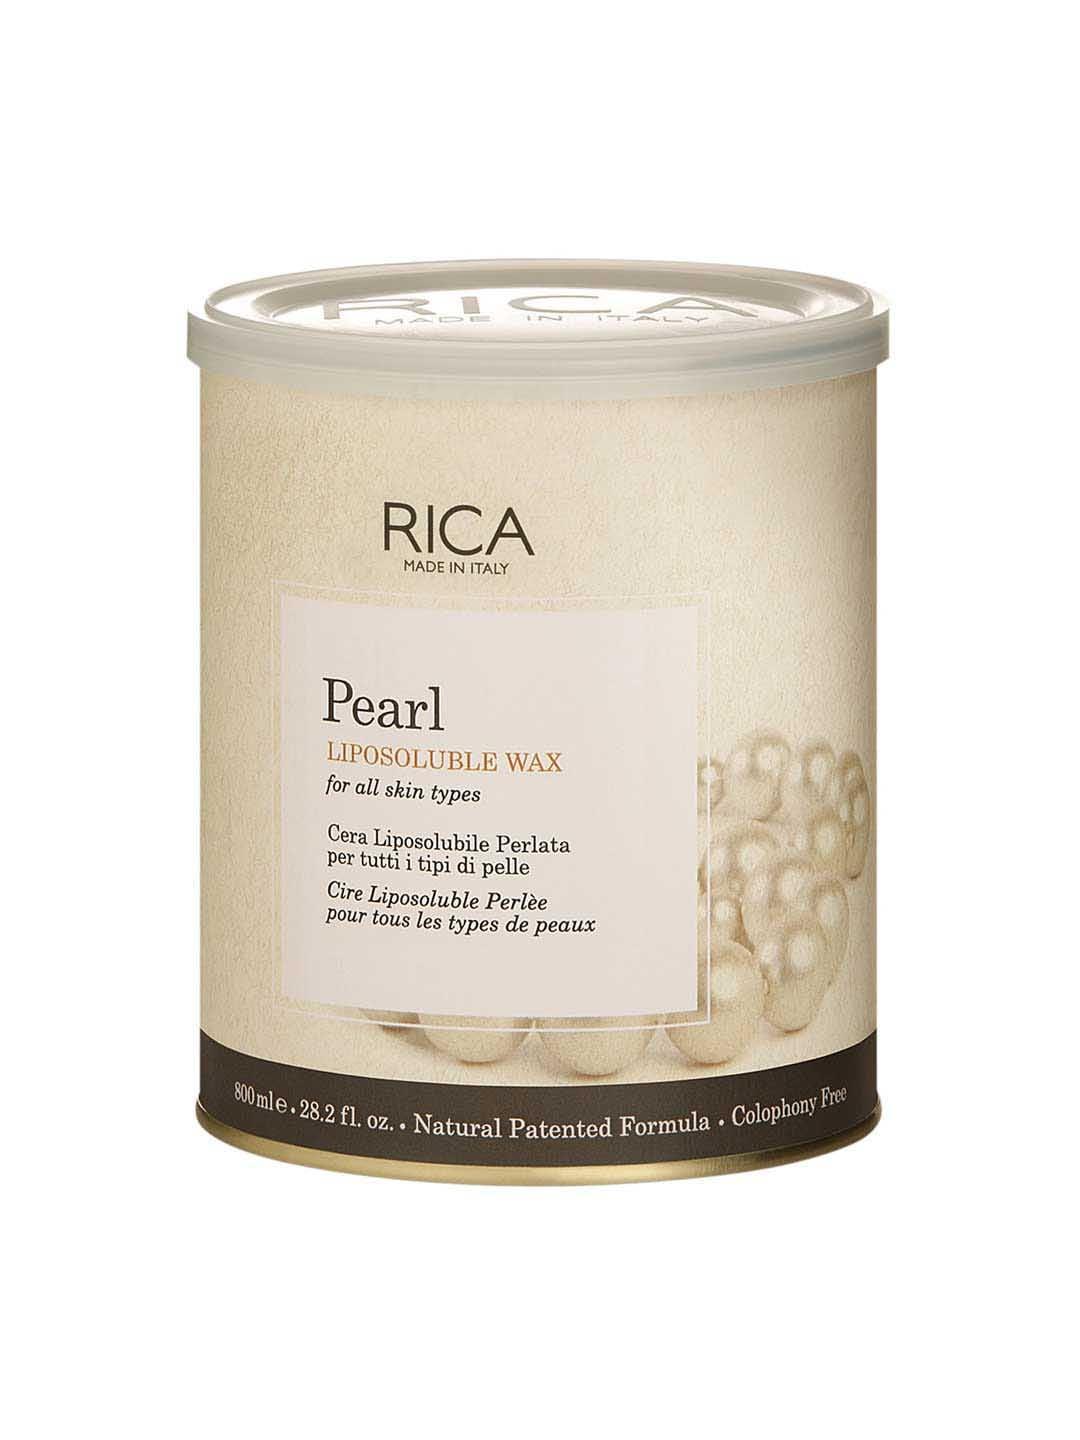 RICA Pearl Liposoluble Wax 800 ml